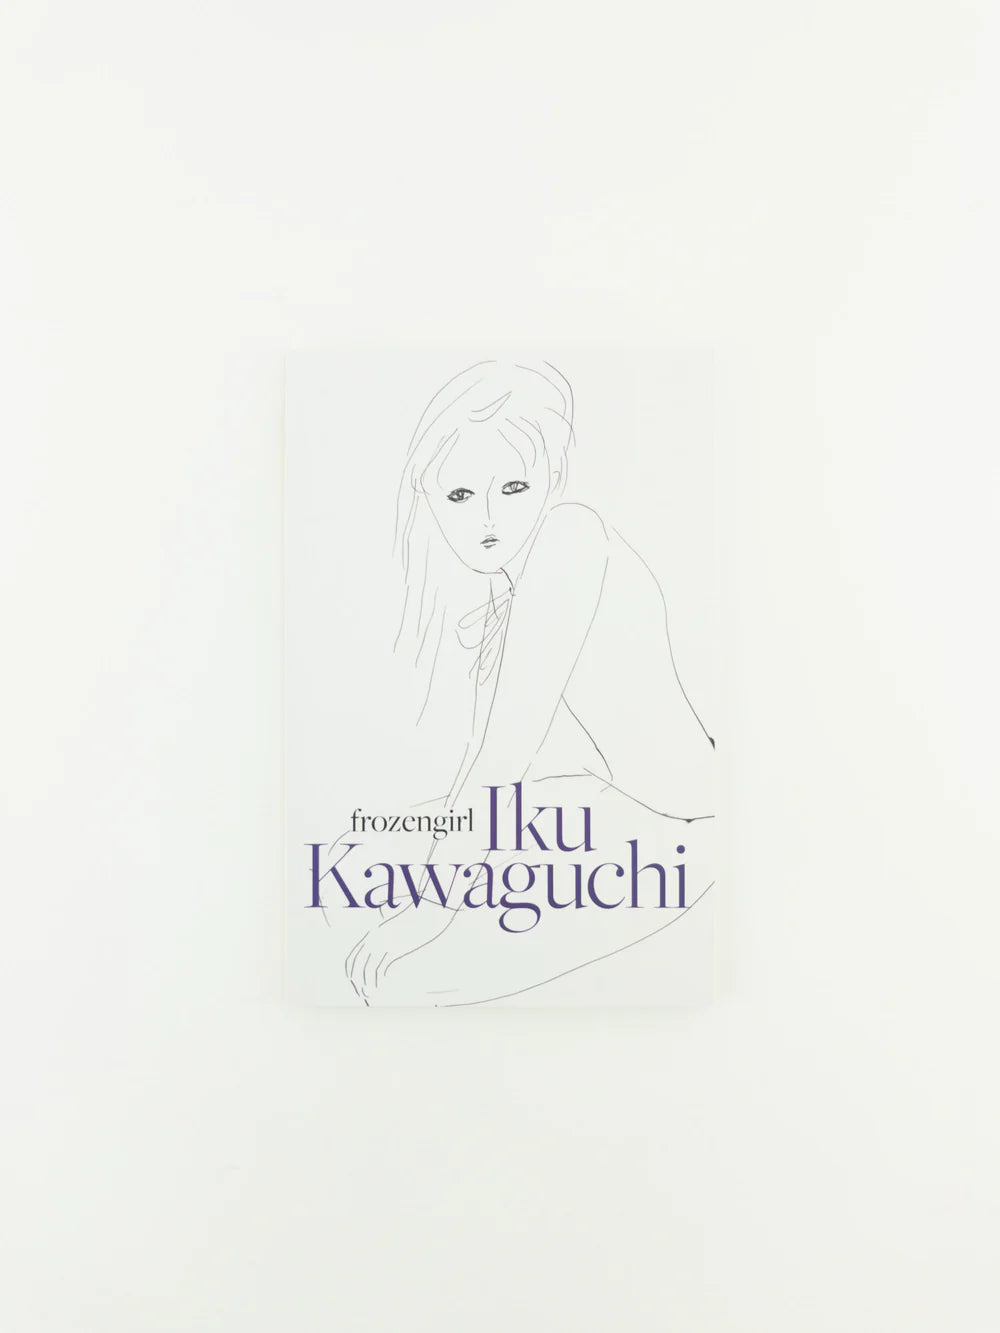 Frozengirl by Iku Kawaguchi